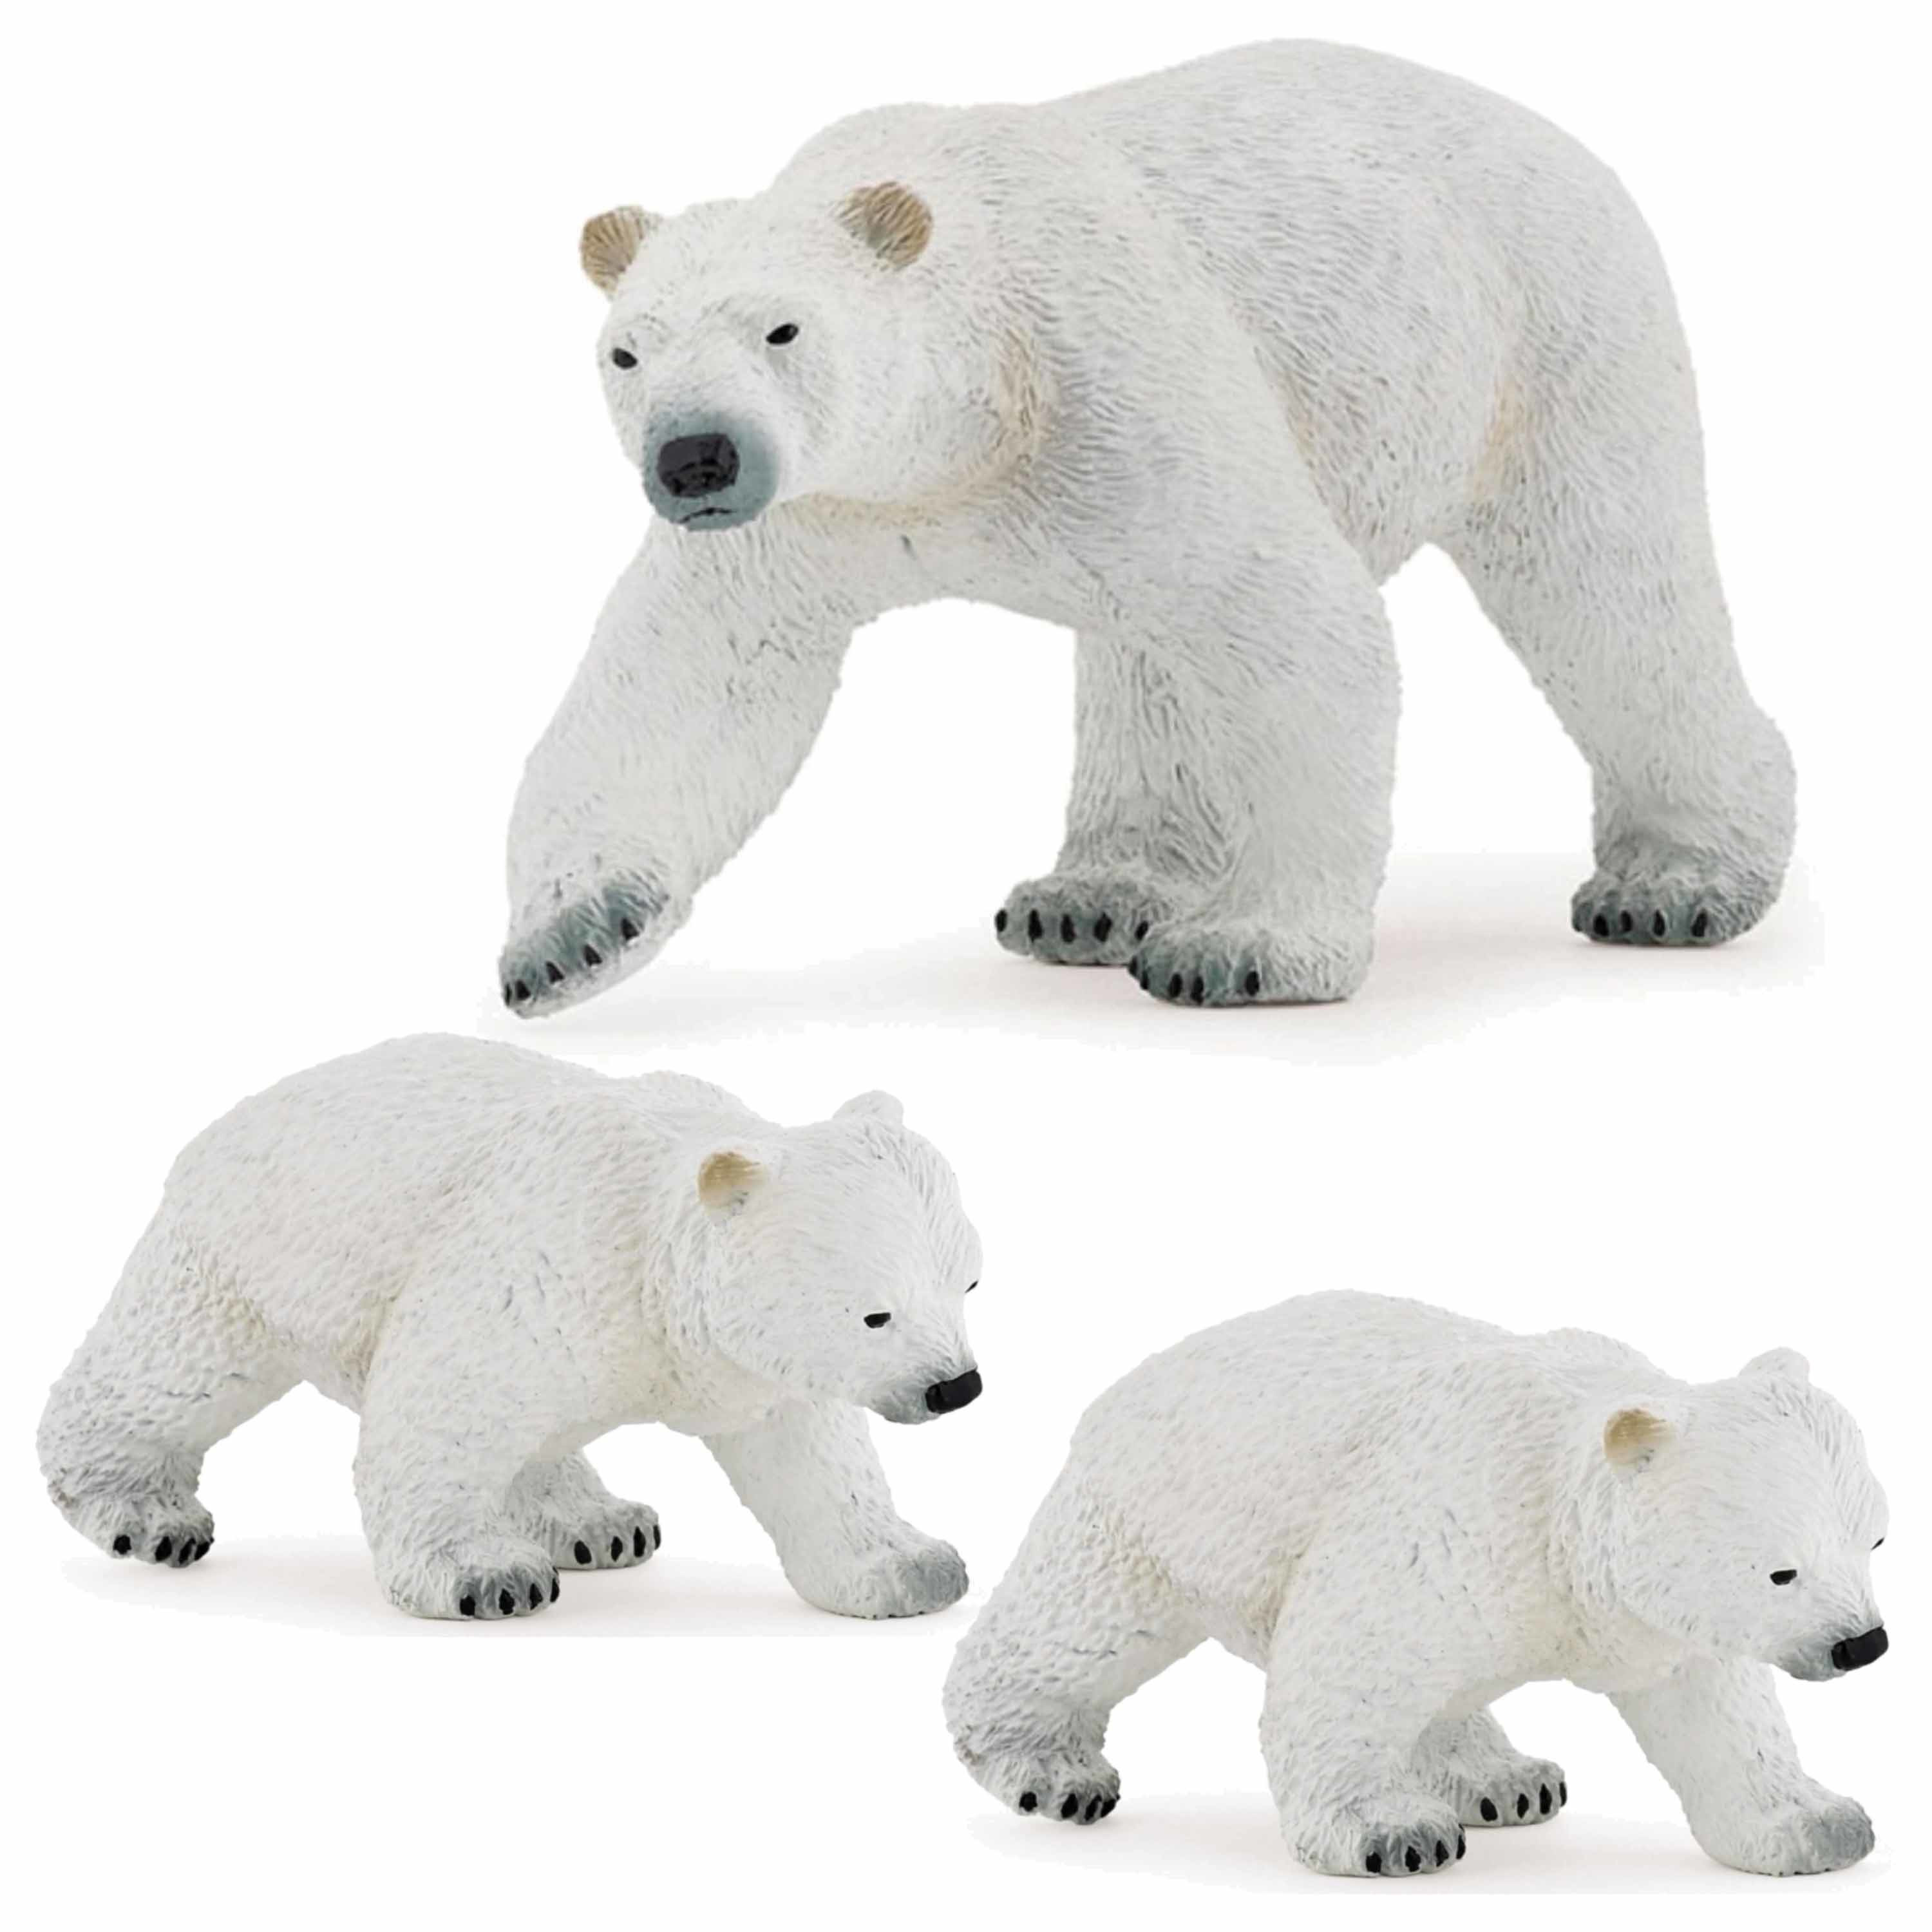 Plastic speelgoed figuren setje ijsbeer en 2x baby-kind 14 en 8 cm